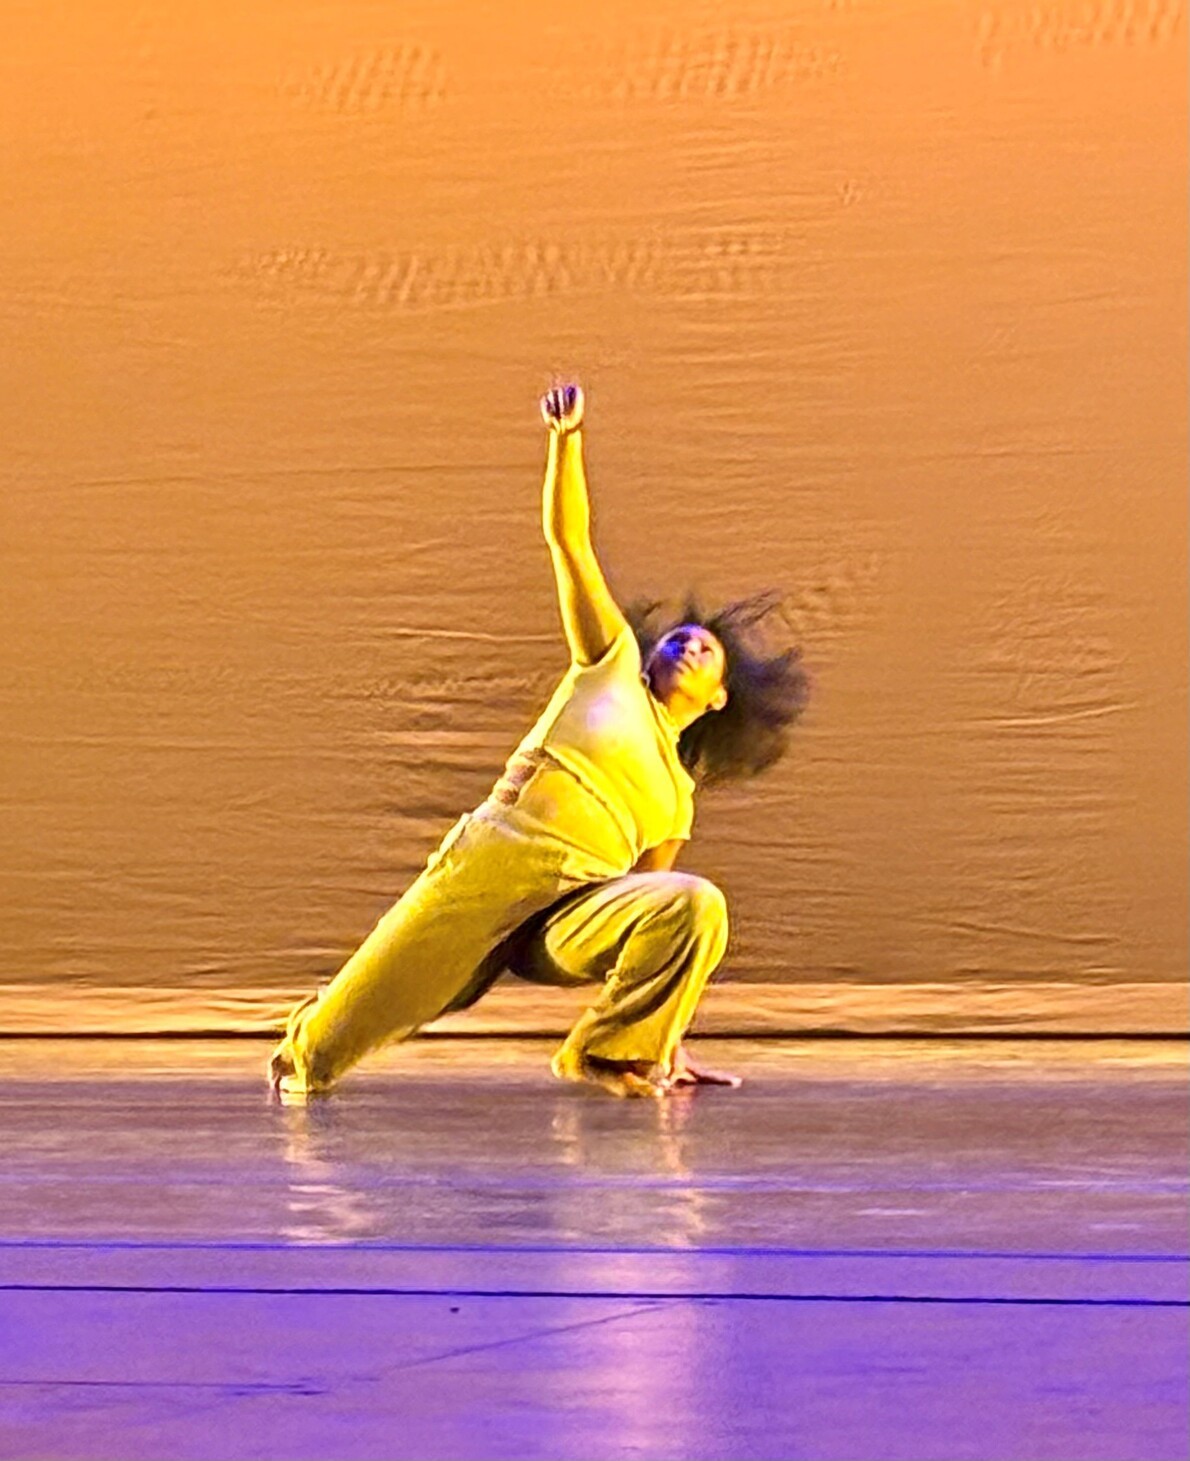 dancer in yellow outfit kneeling on floor